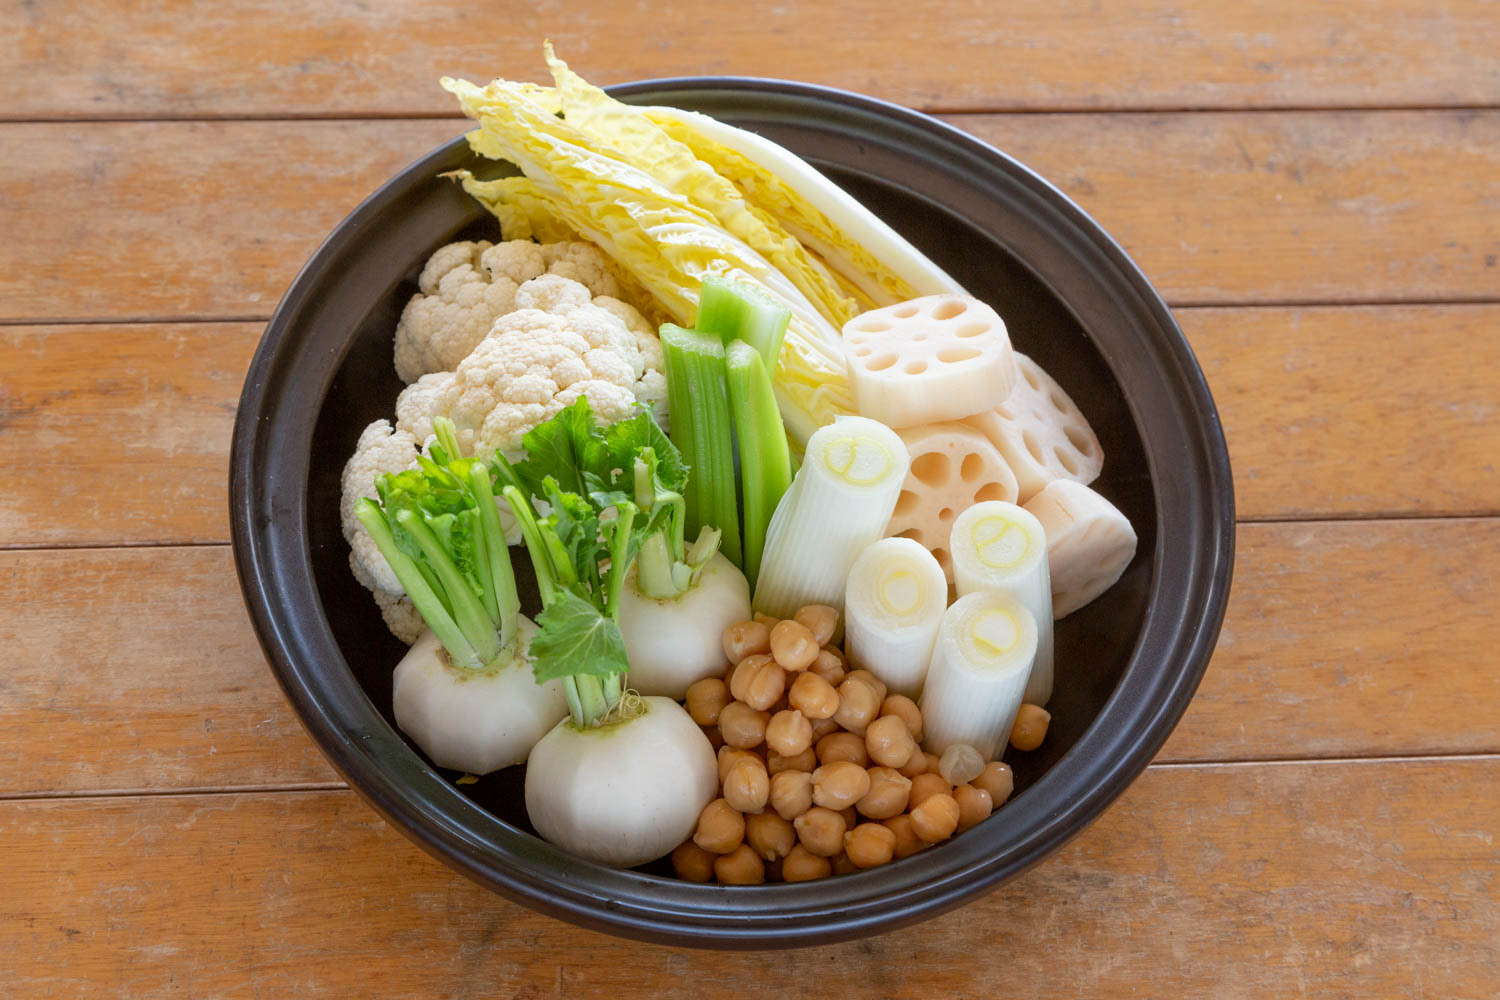 タジン鍋に野菜と豆を並べた様子。